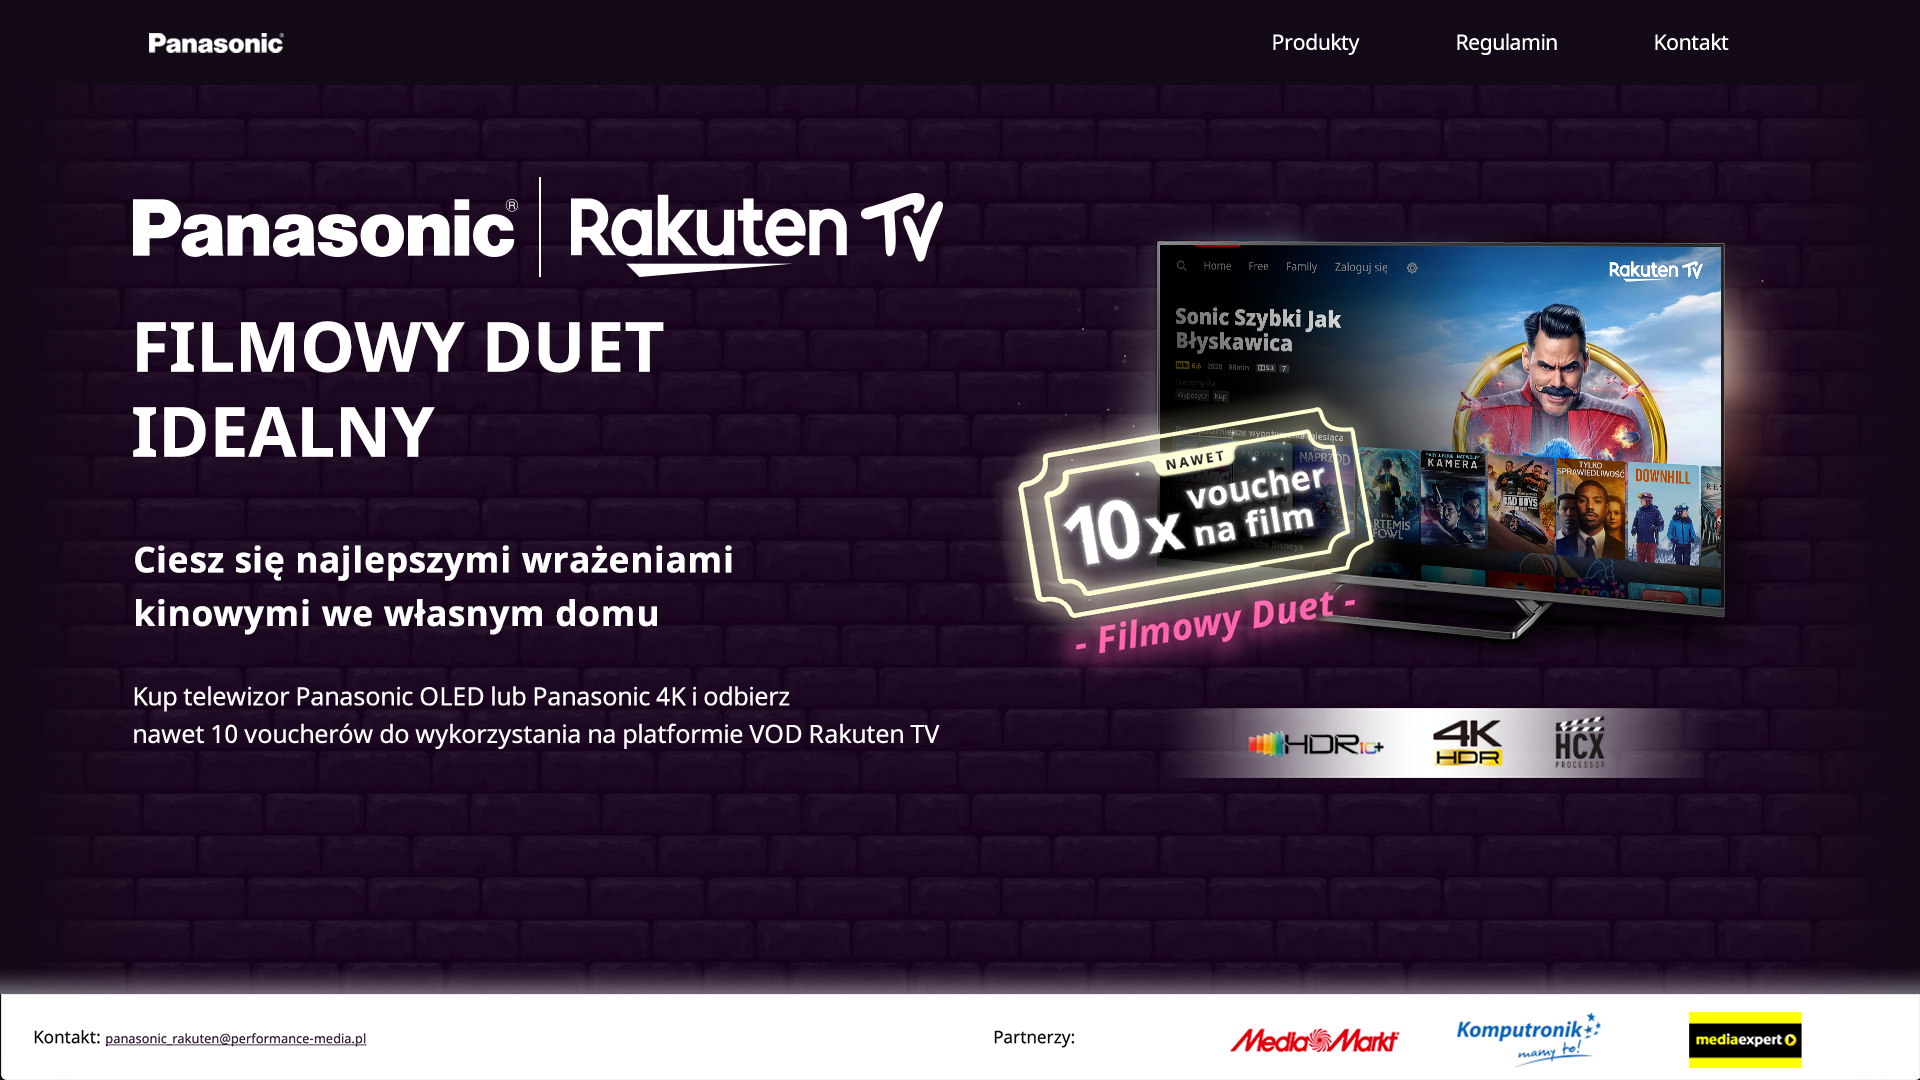 Kup telewizor Panasonic i odbierz vouchery na filmy w aplikacji VOD Rakuten TV